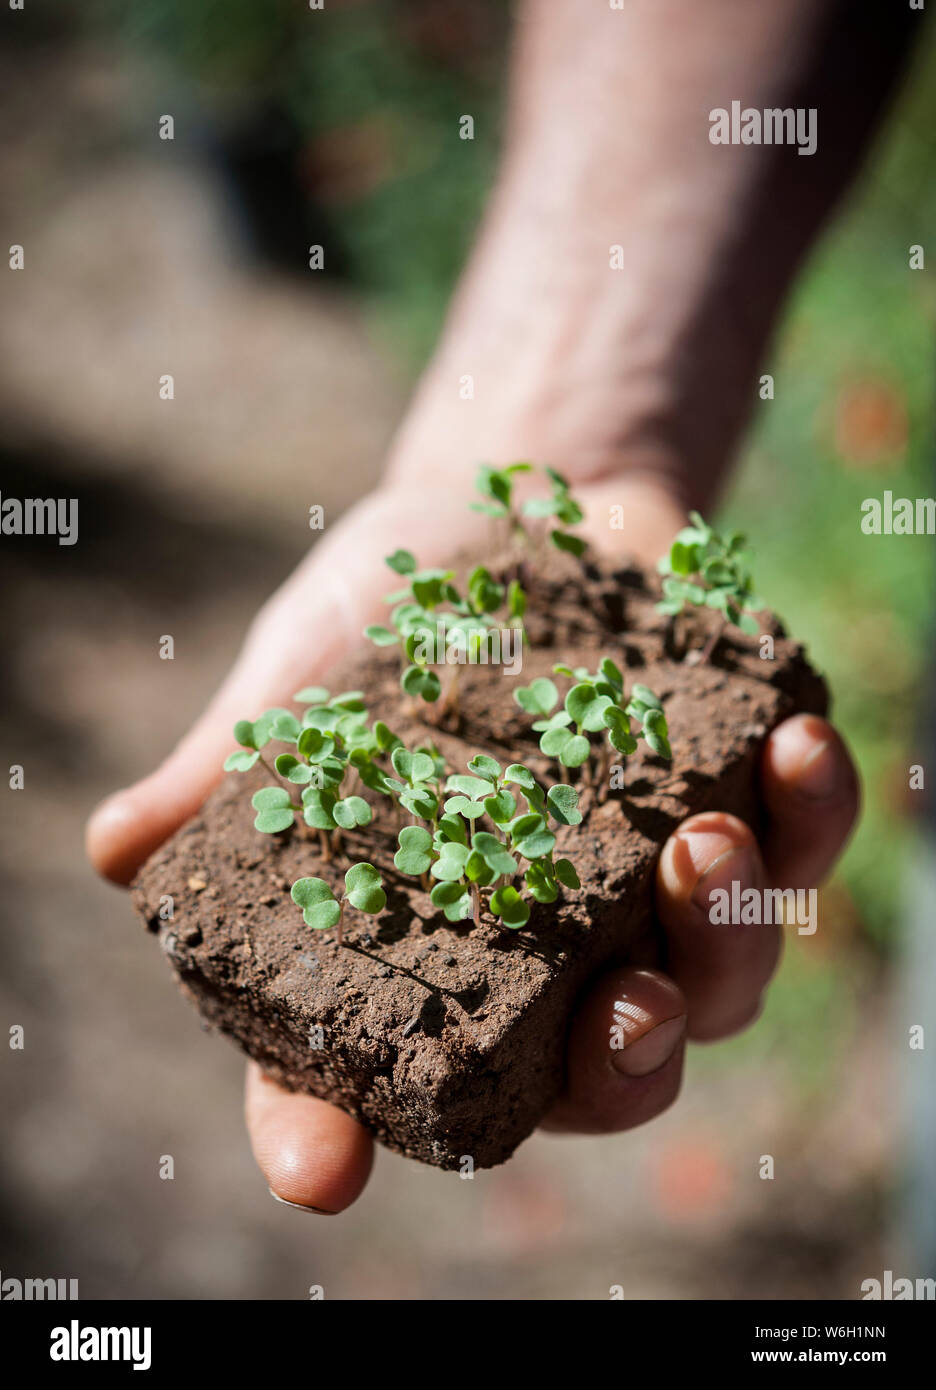 Una mano trattiene giovani germogli vegetali che cresce da un grumo di suolo Foto Stock